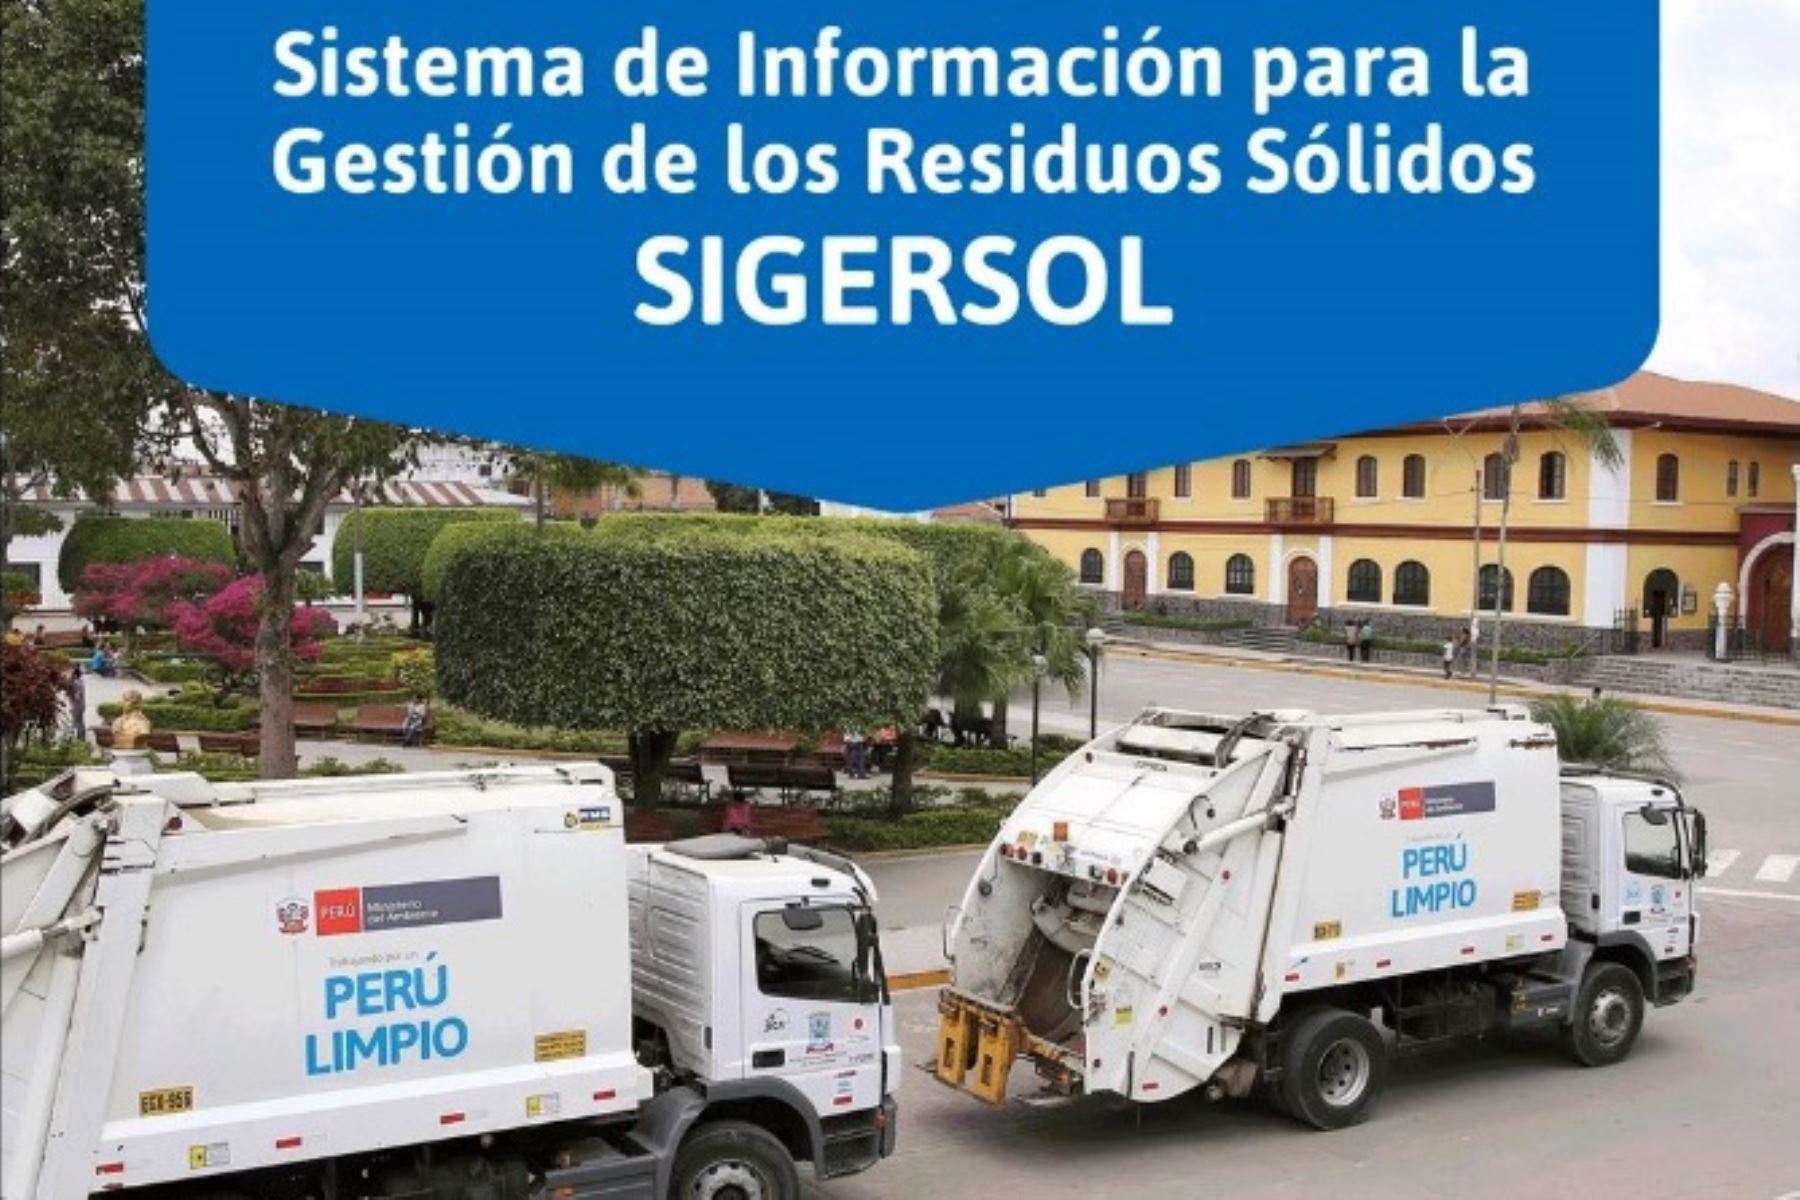 Ministerio del Ambiente actualiza plataforma Sigersol para informar sobre gestión de residuos en municipios.